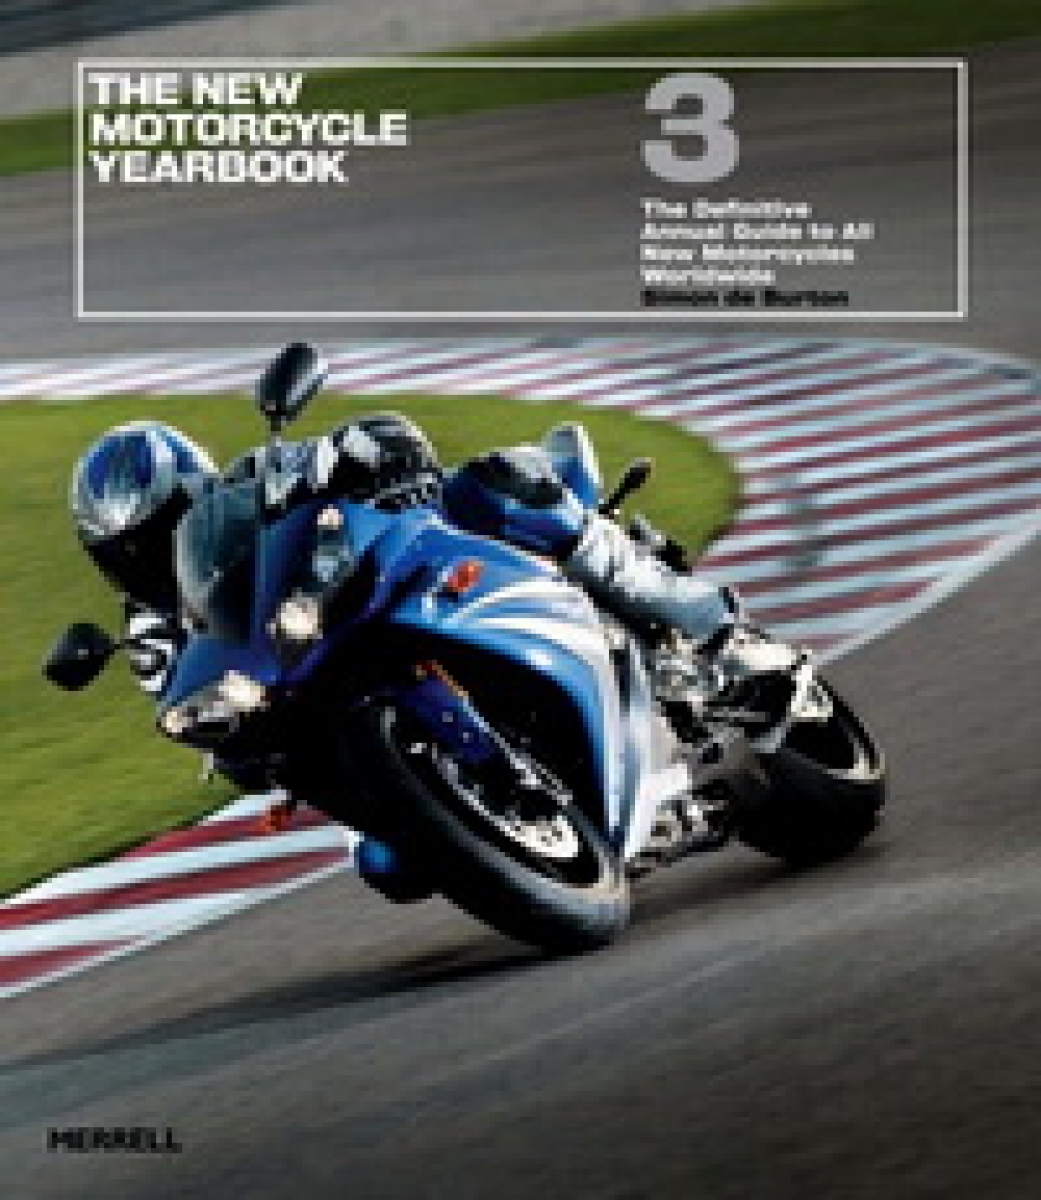 Burton S.D. New Motorcycle Yearbook 3 